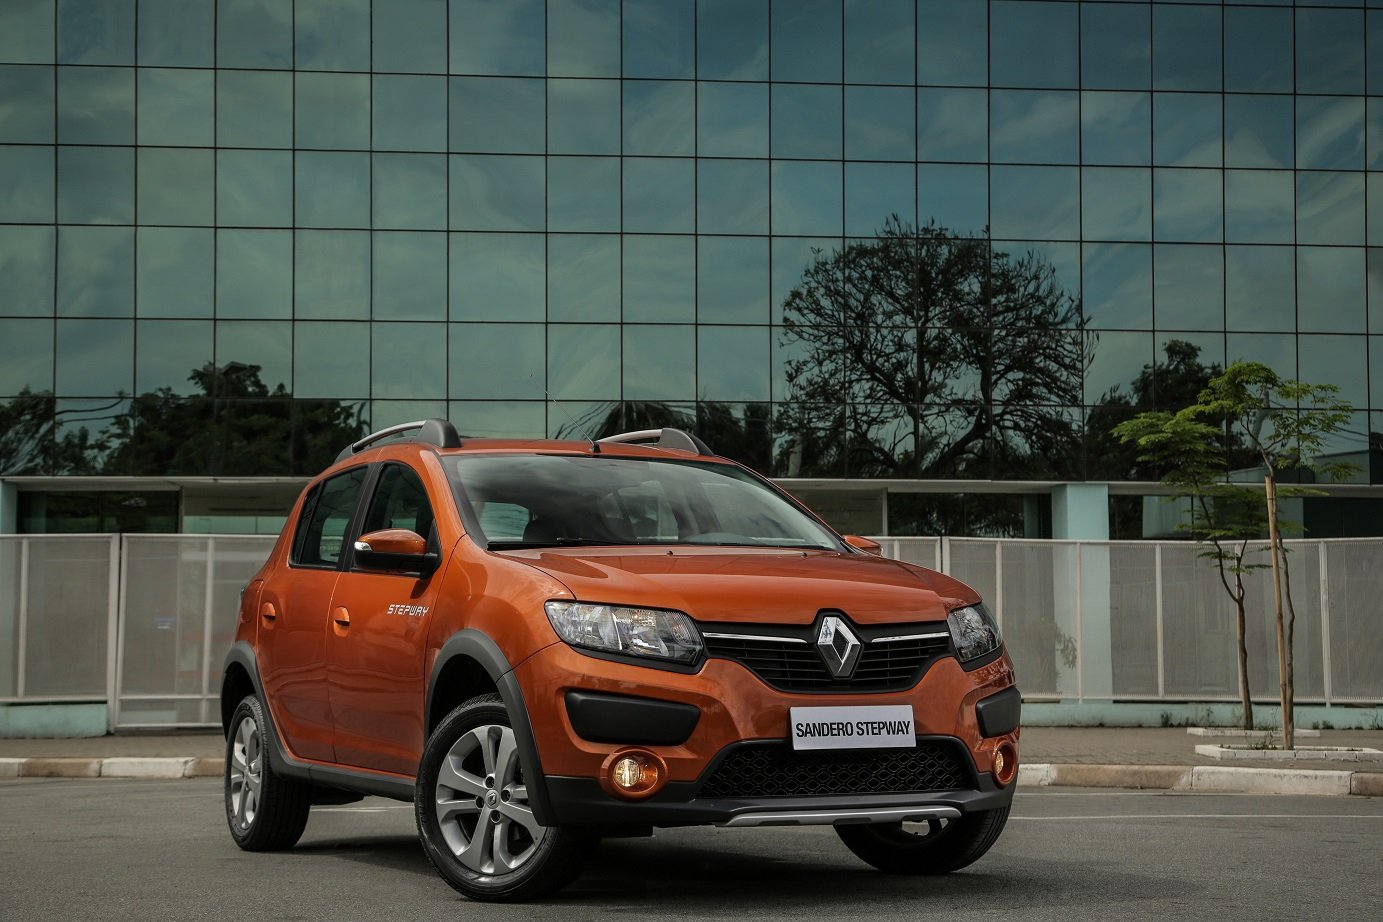 Seguindo tendência, o câmbio automatizado da Renault vai ser abolido em favor de um automático CVT, a francesa confirmou.